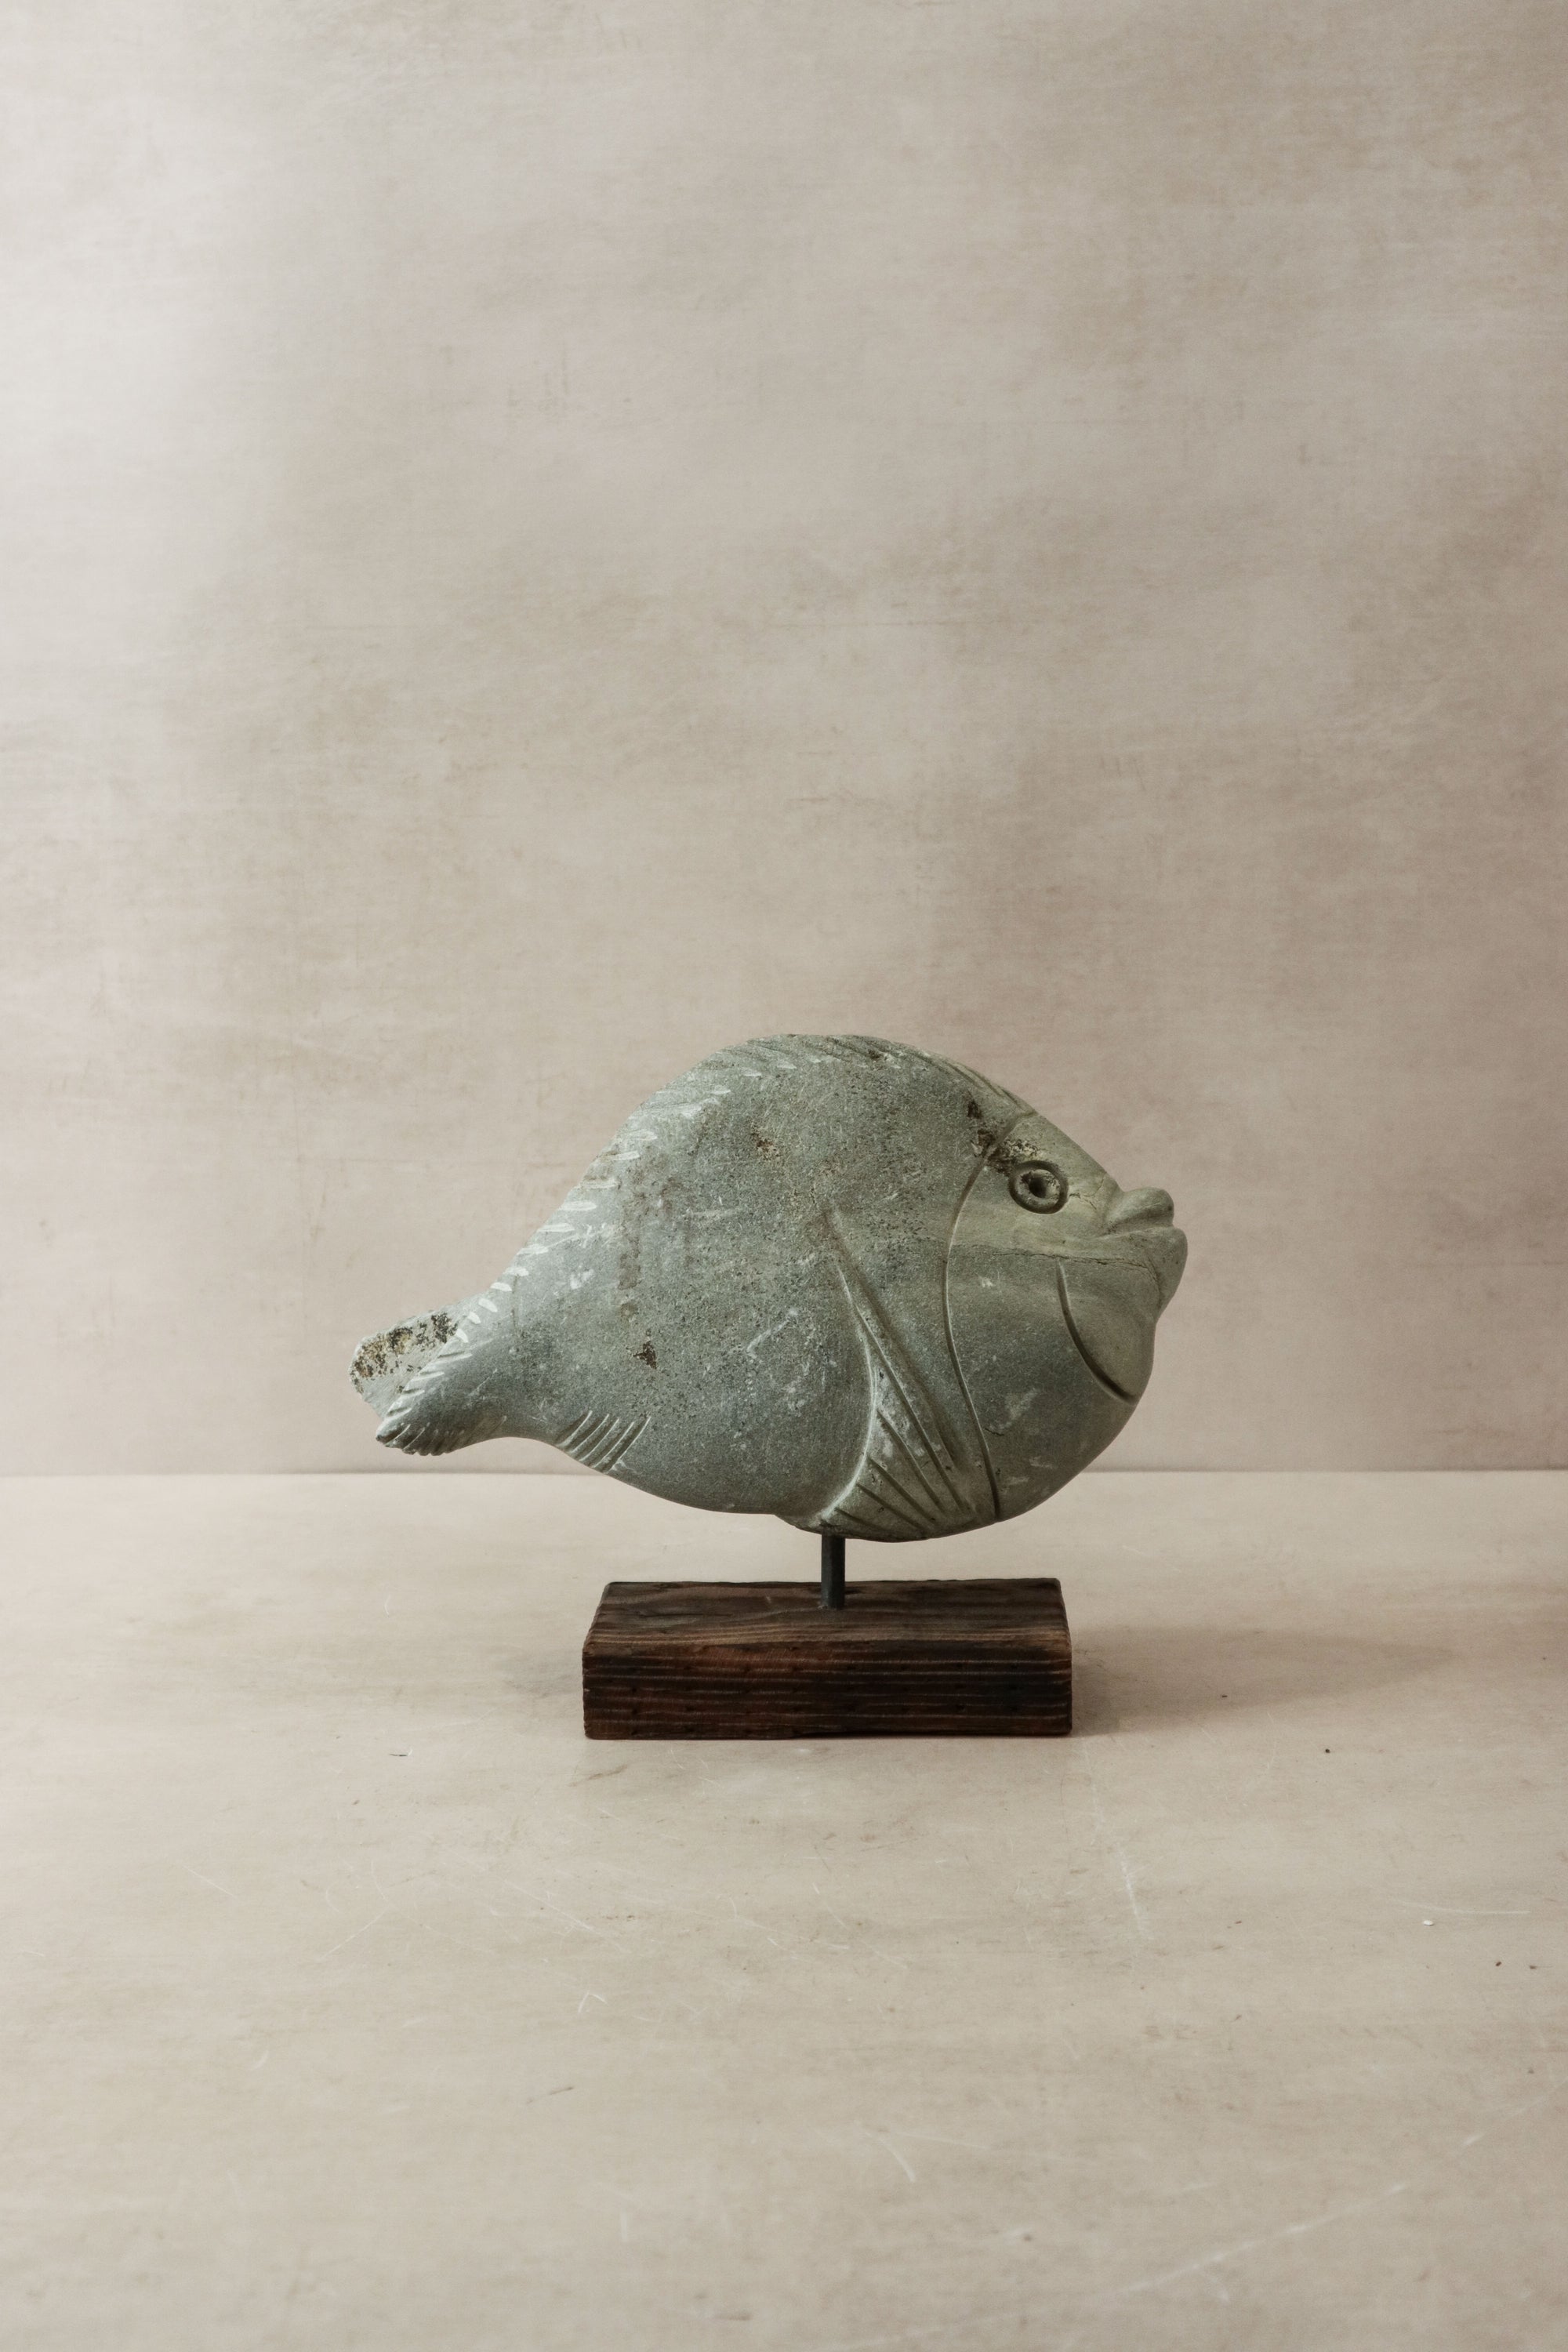 Stone Fish Sculpture - Zimbabwe - 31.3